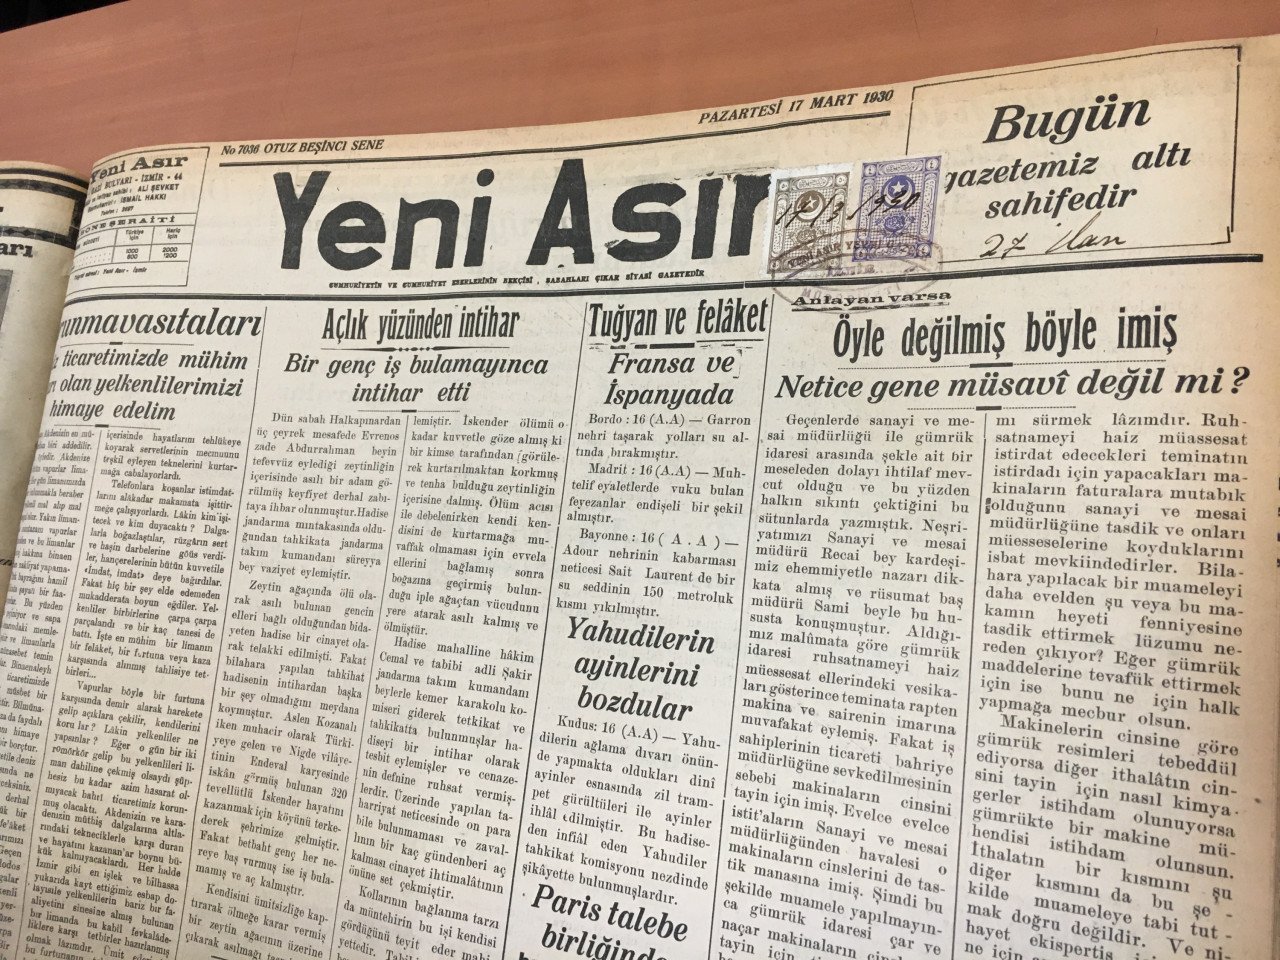 Akhbar Turki lama yang menjadi sumber rujukan yang didapati daripada perpustakaan besar di Istanbul